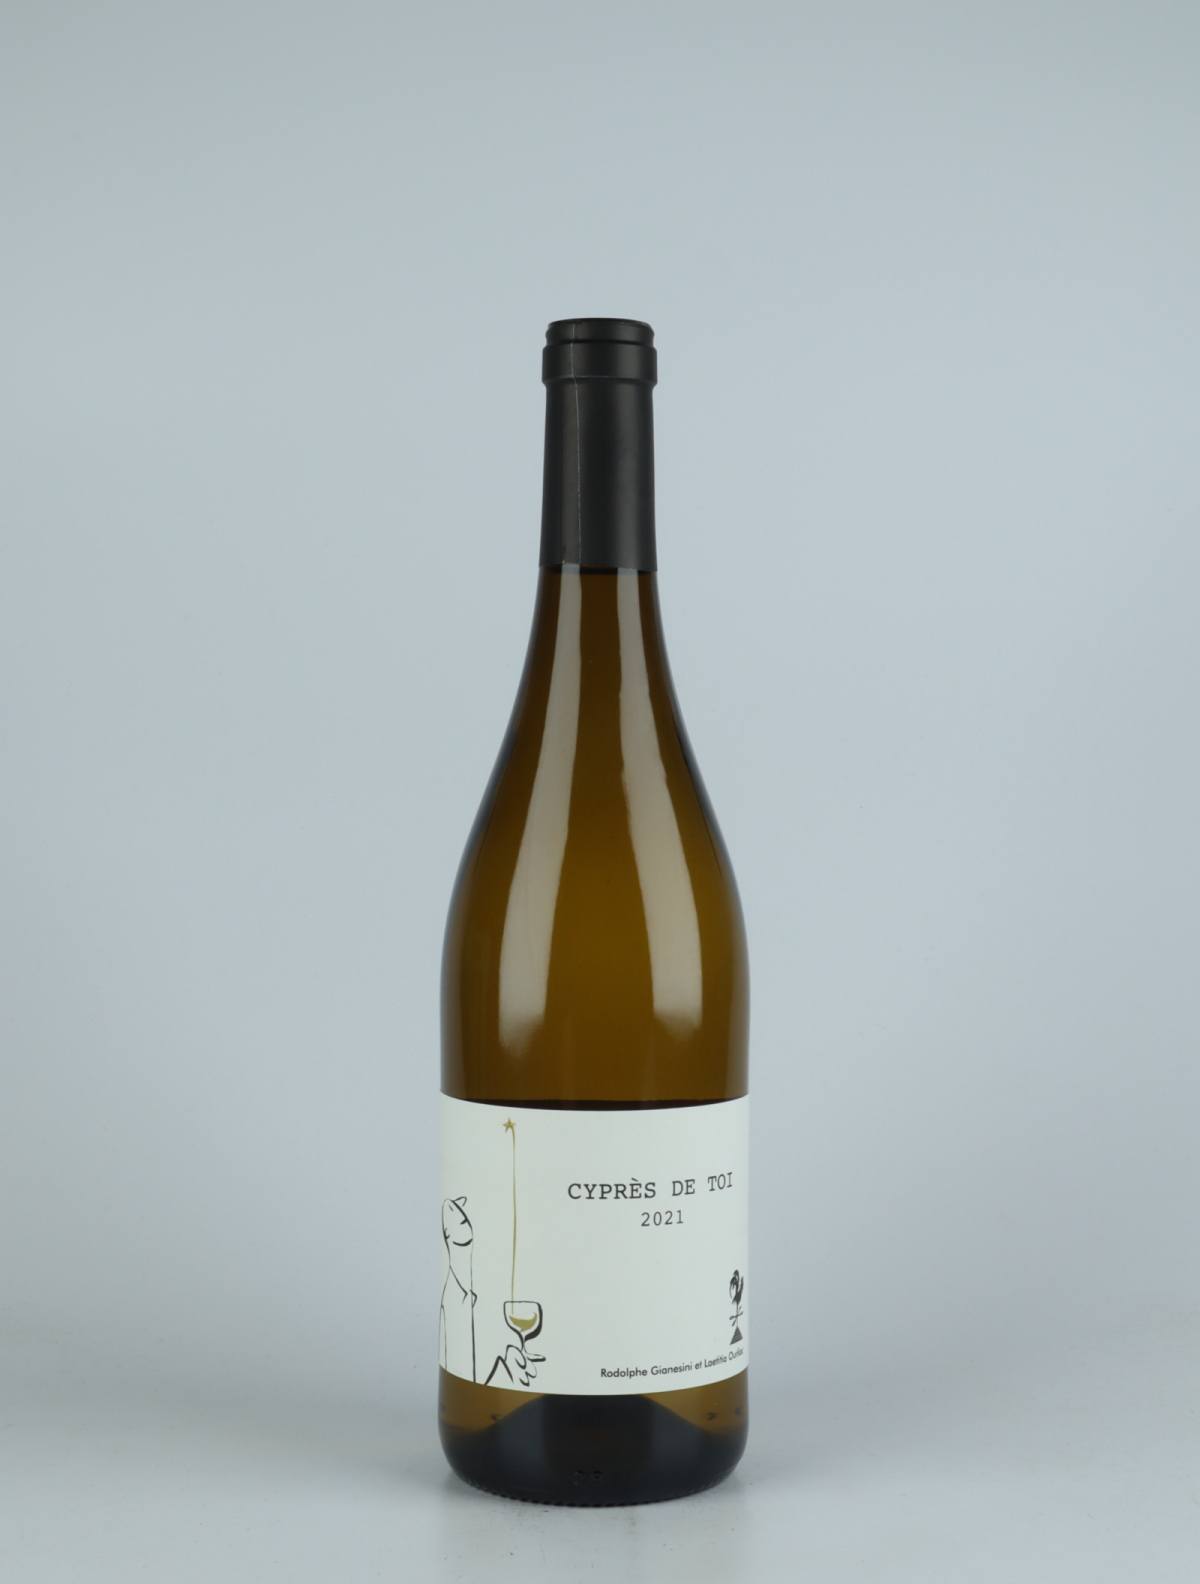 En flaske 2021 Cypres de Toi Blanc Hvidvin fra Fond Cyprès, Languedoc i Frankrig